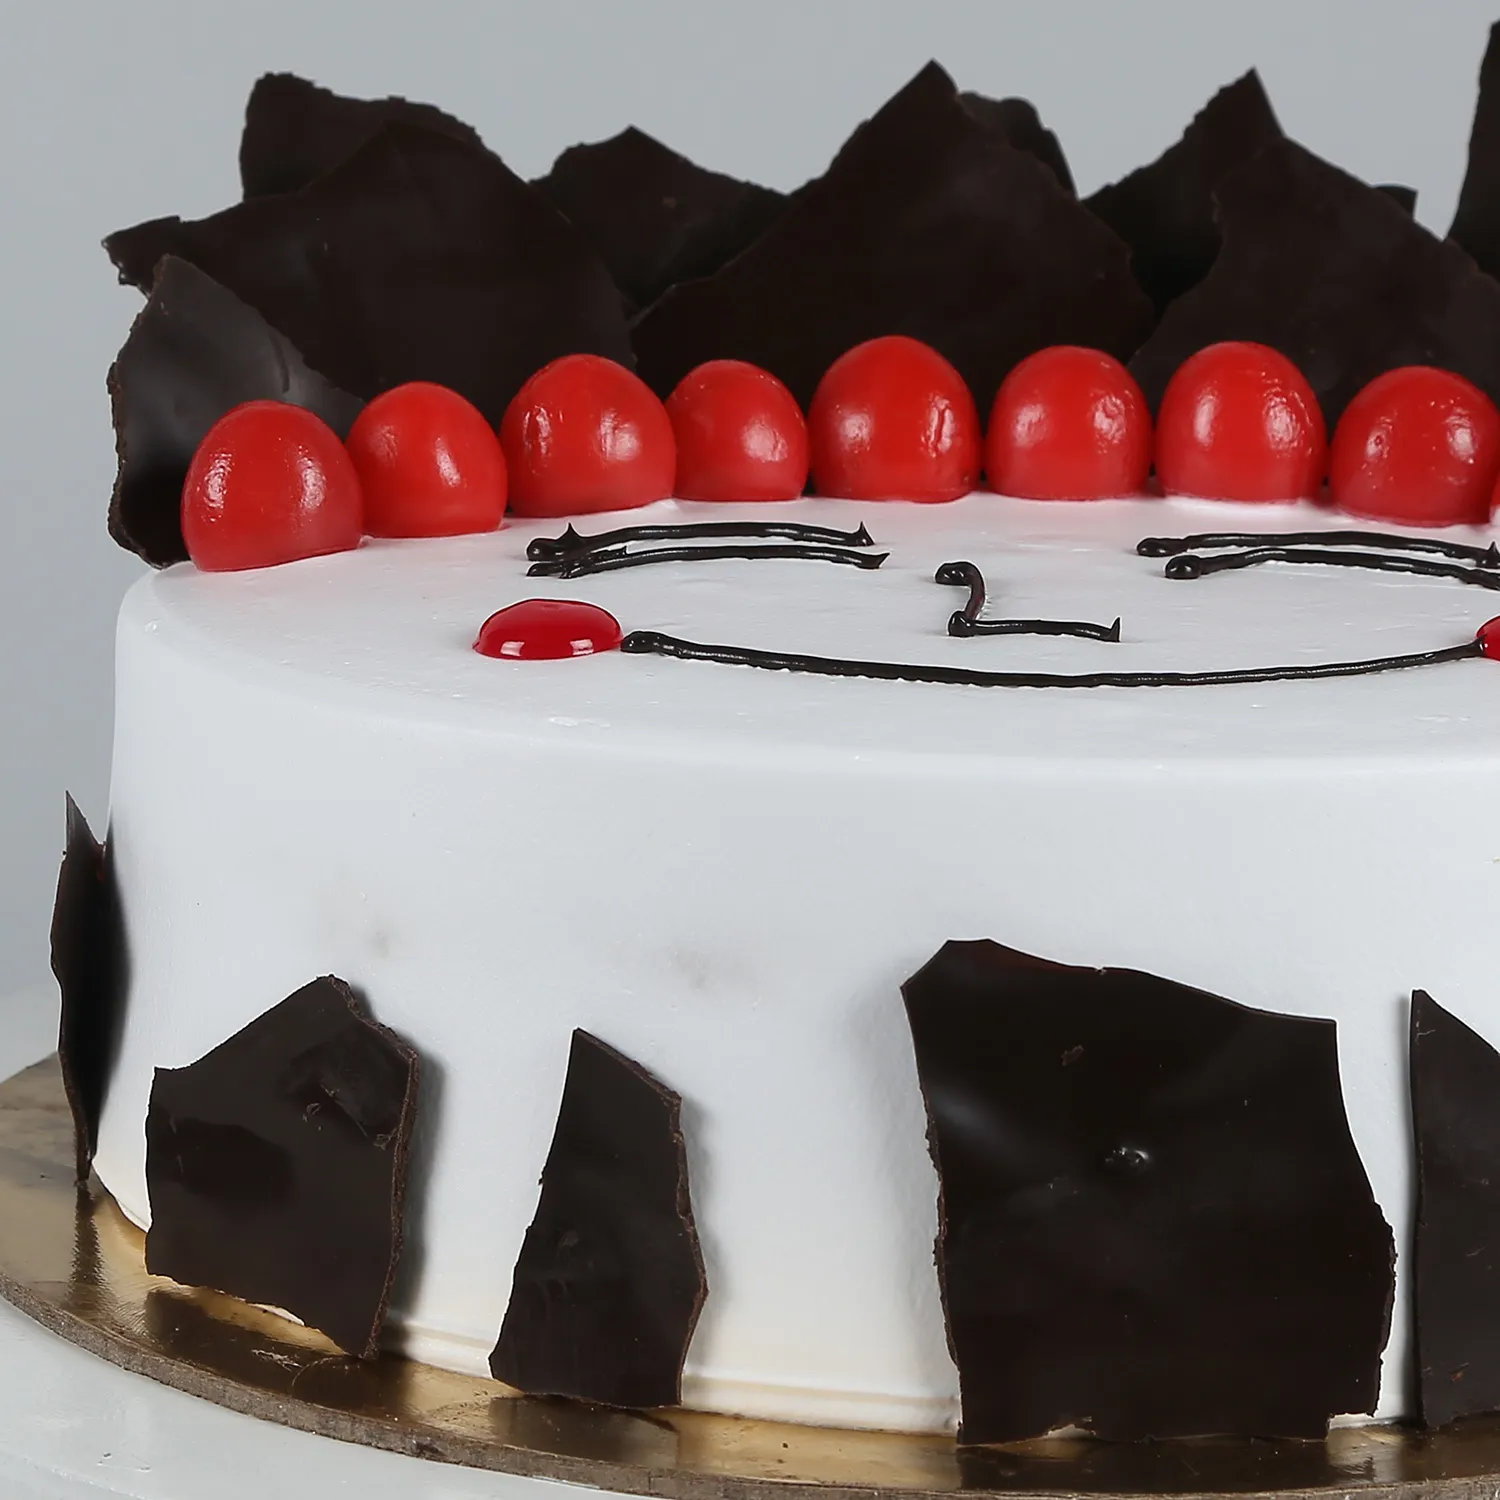 Happy Birthday Cake - 1 KG